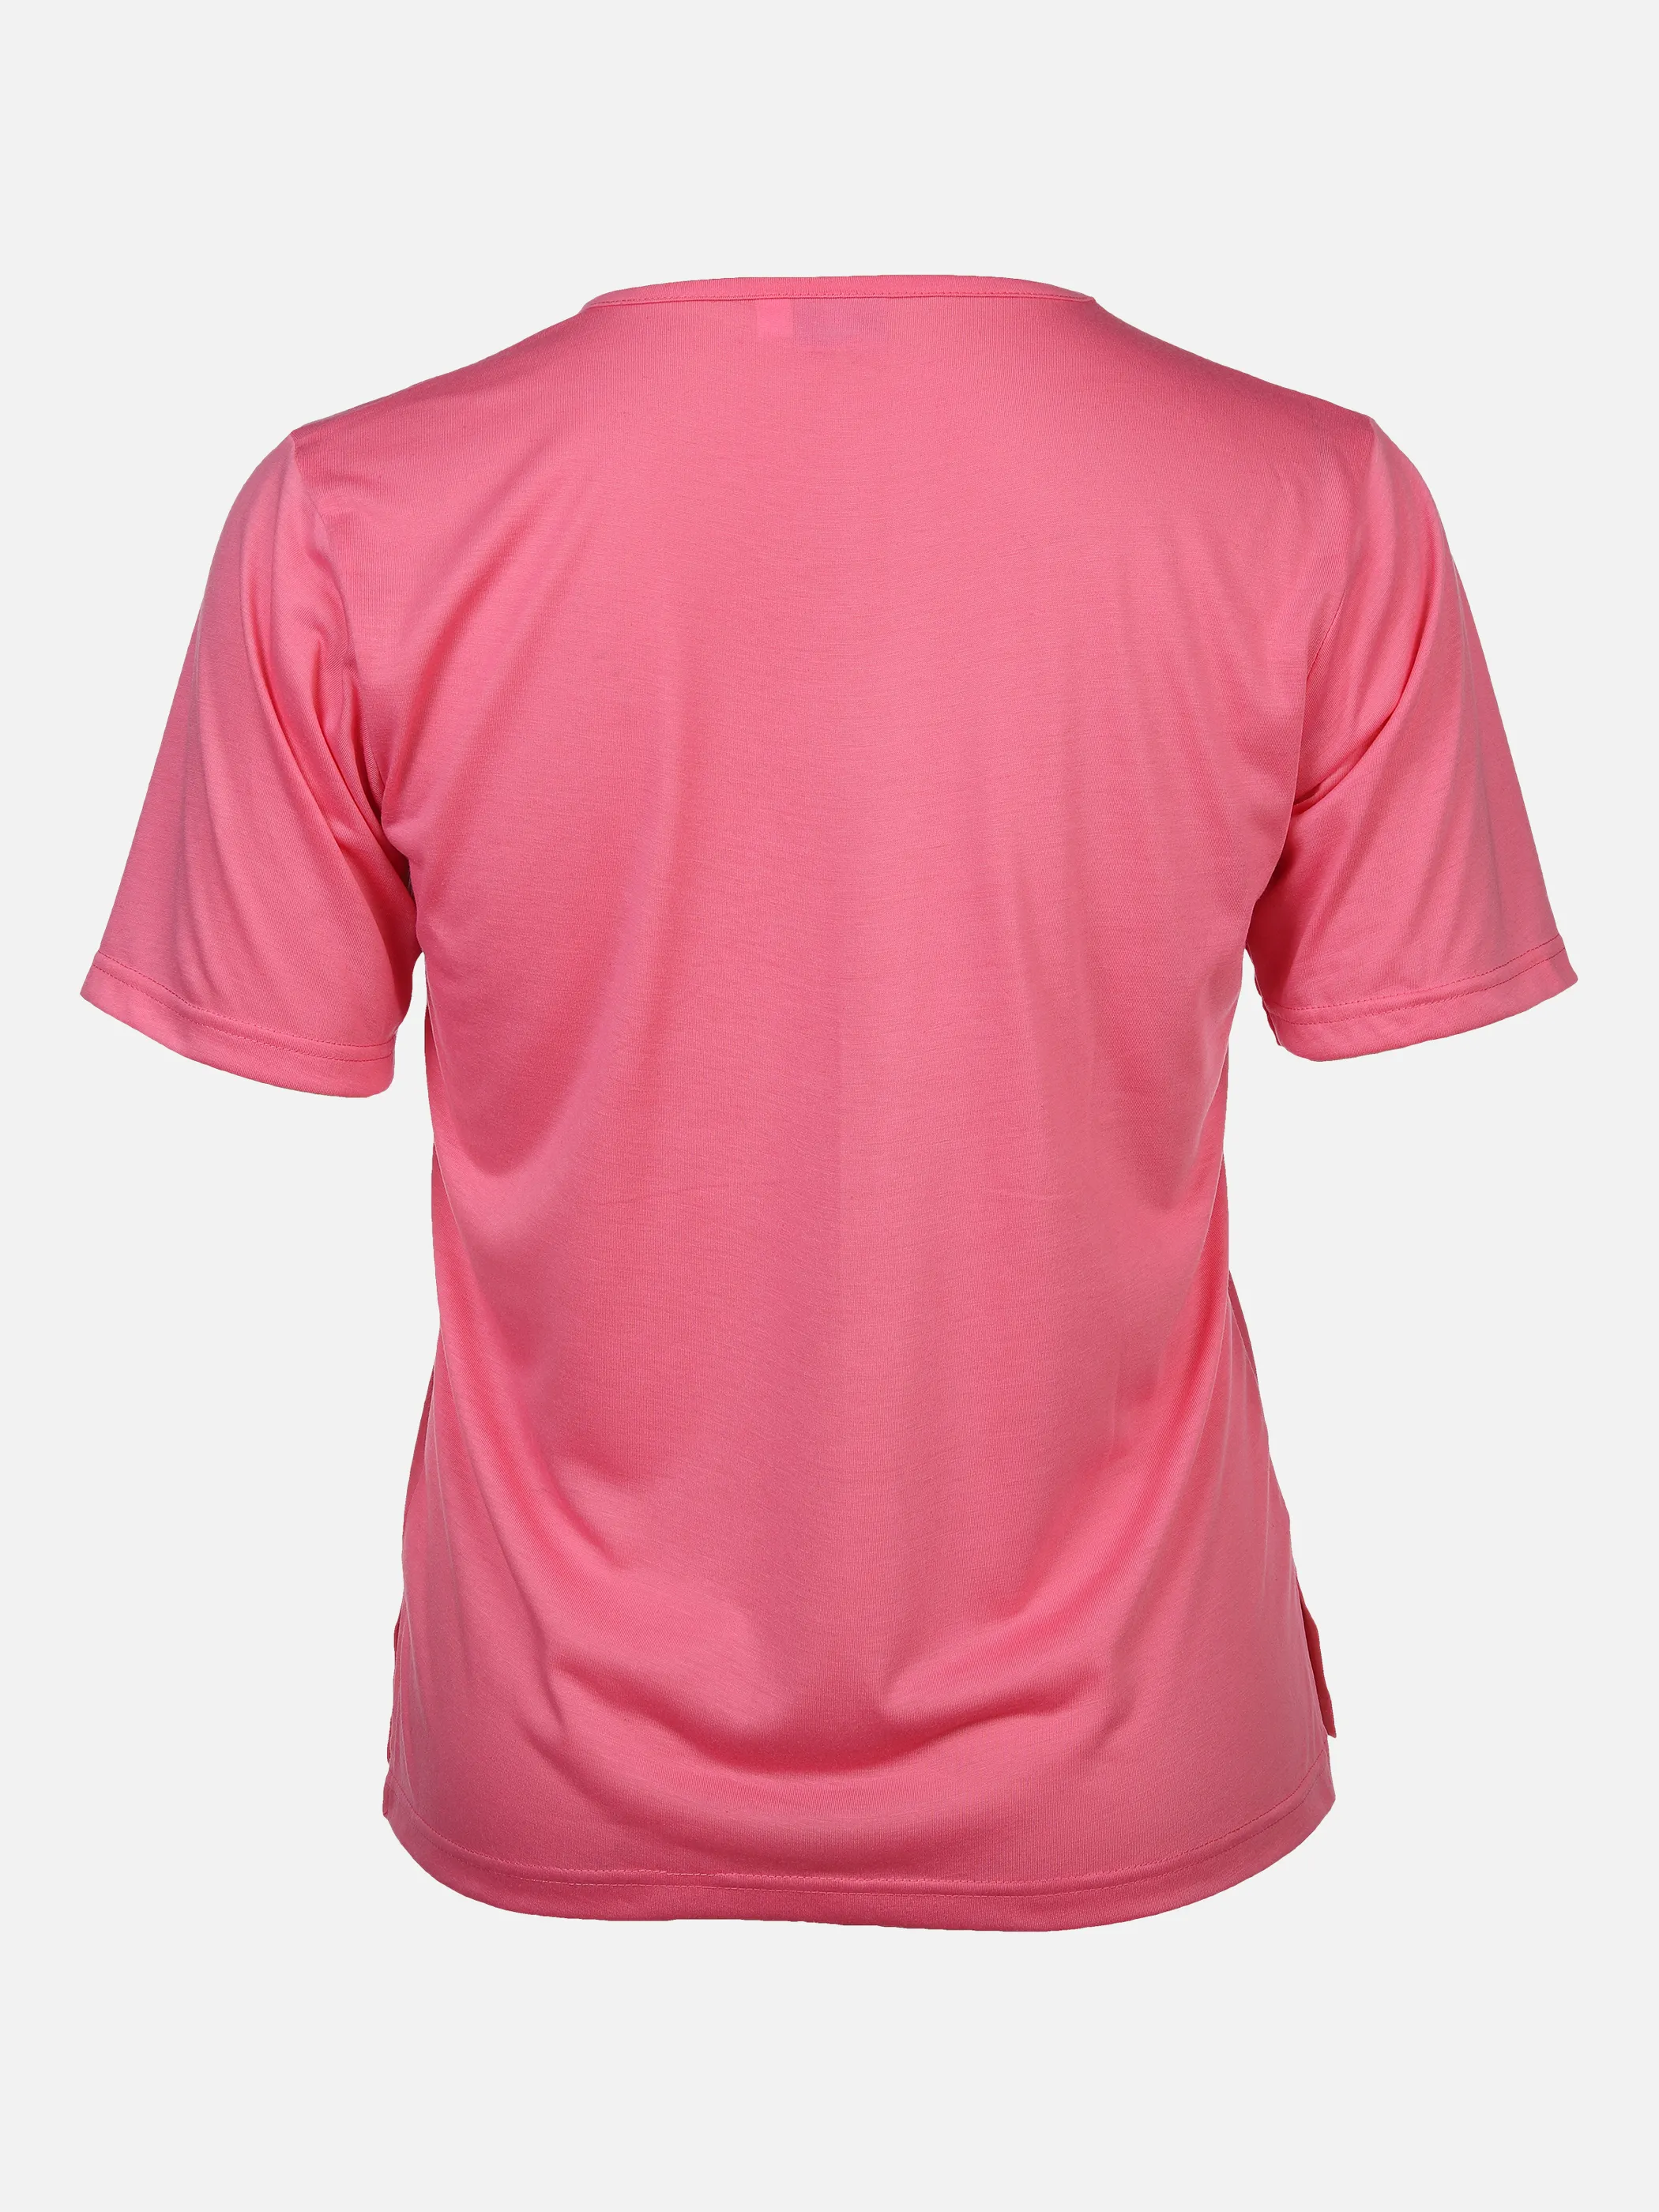 Sonja Blank Da-gr.Gr.T-Shirt m.Strassapplikation Pink 876189 PINK 2